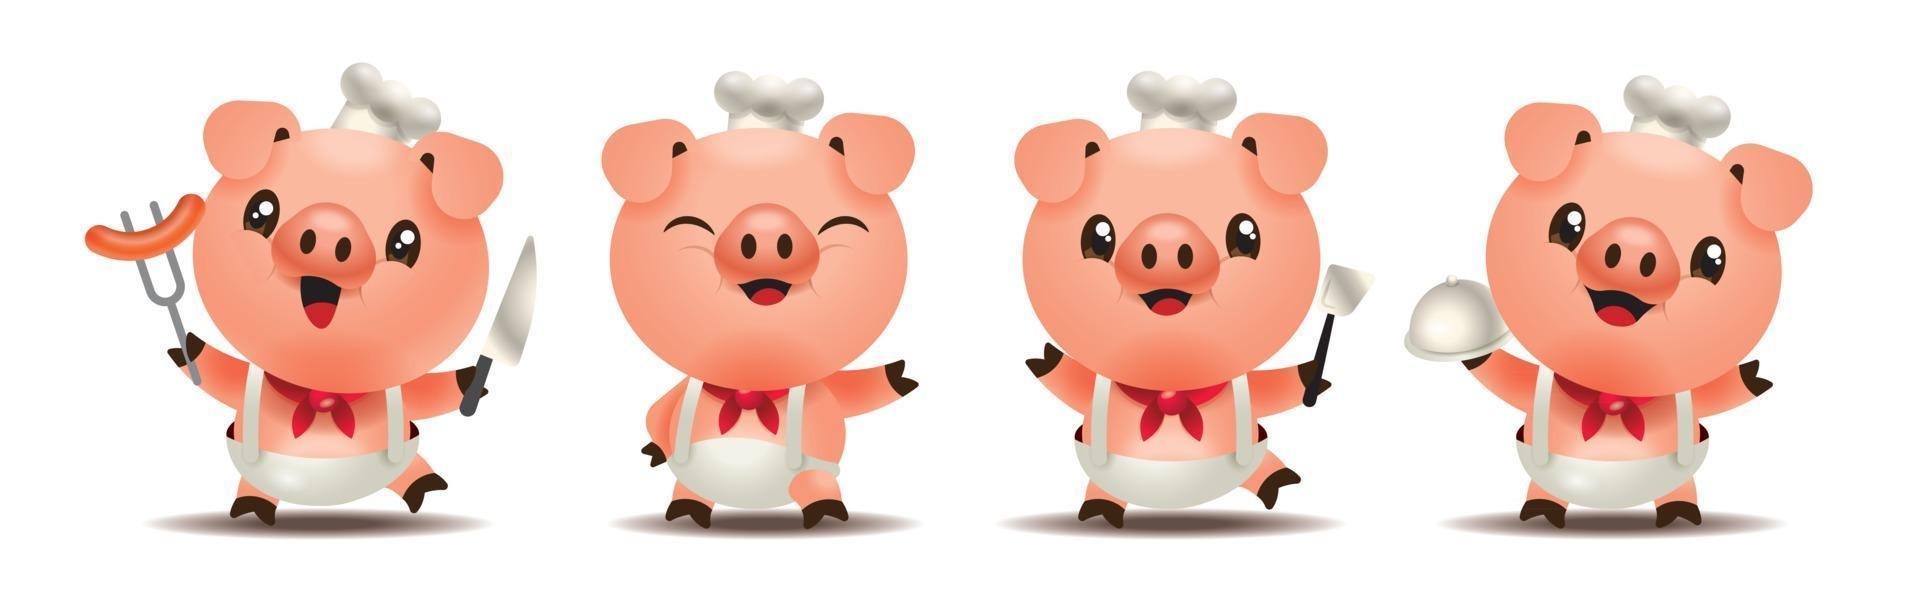 cartoon schattig varken chef-kok mascotte set met verschillende soorten keukengerei vector